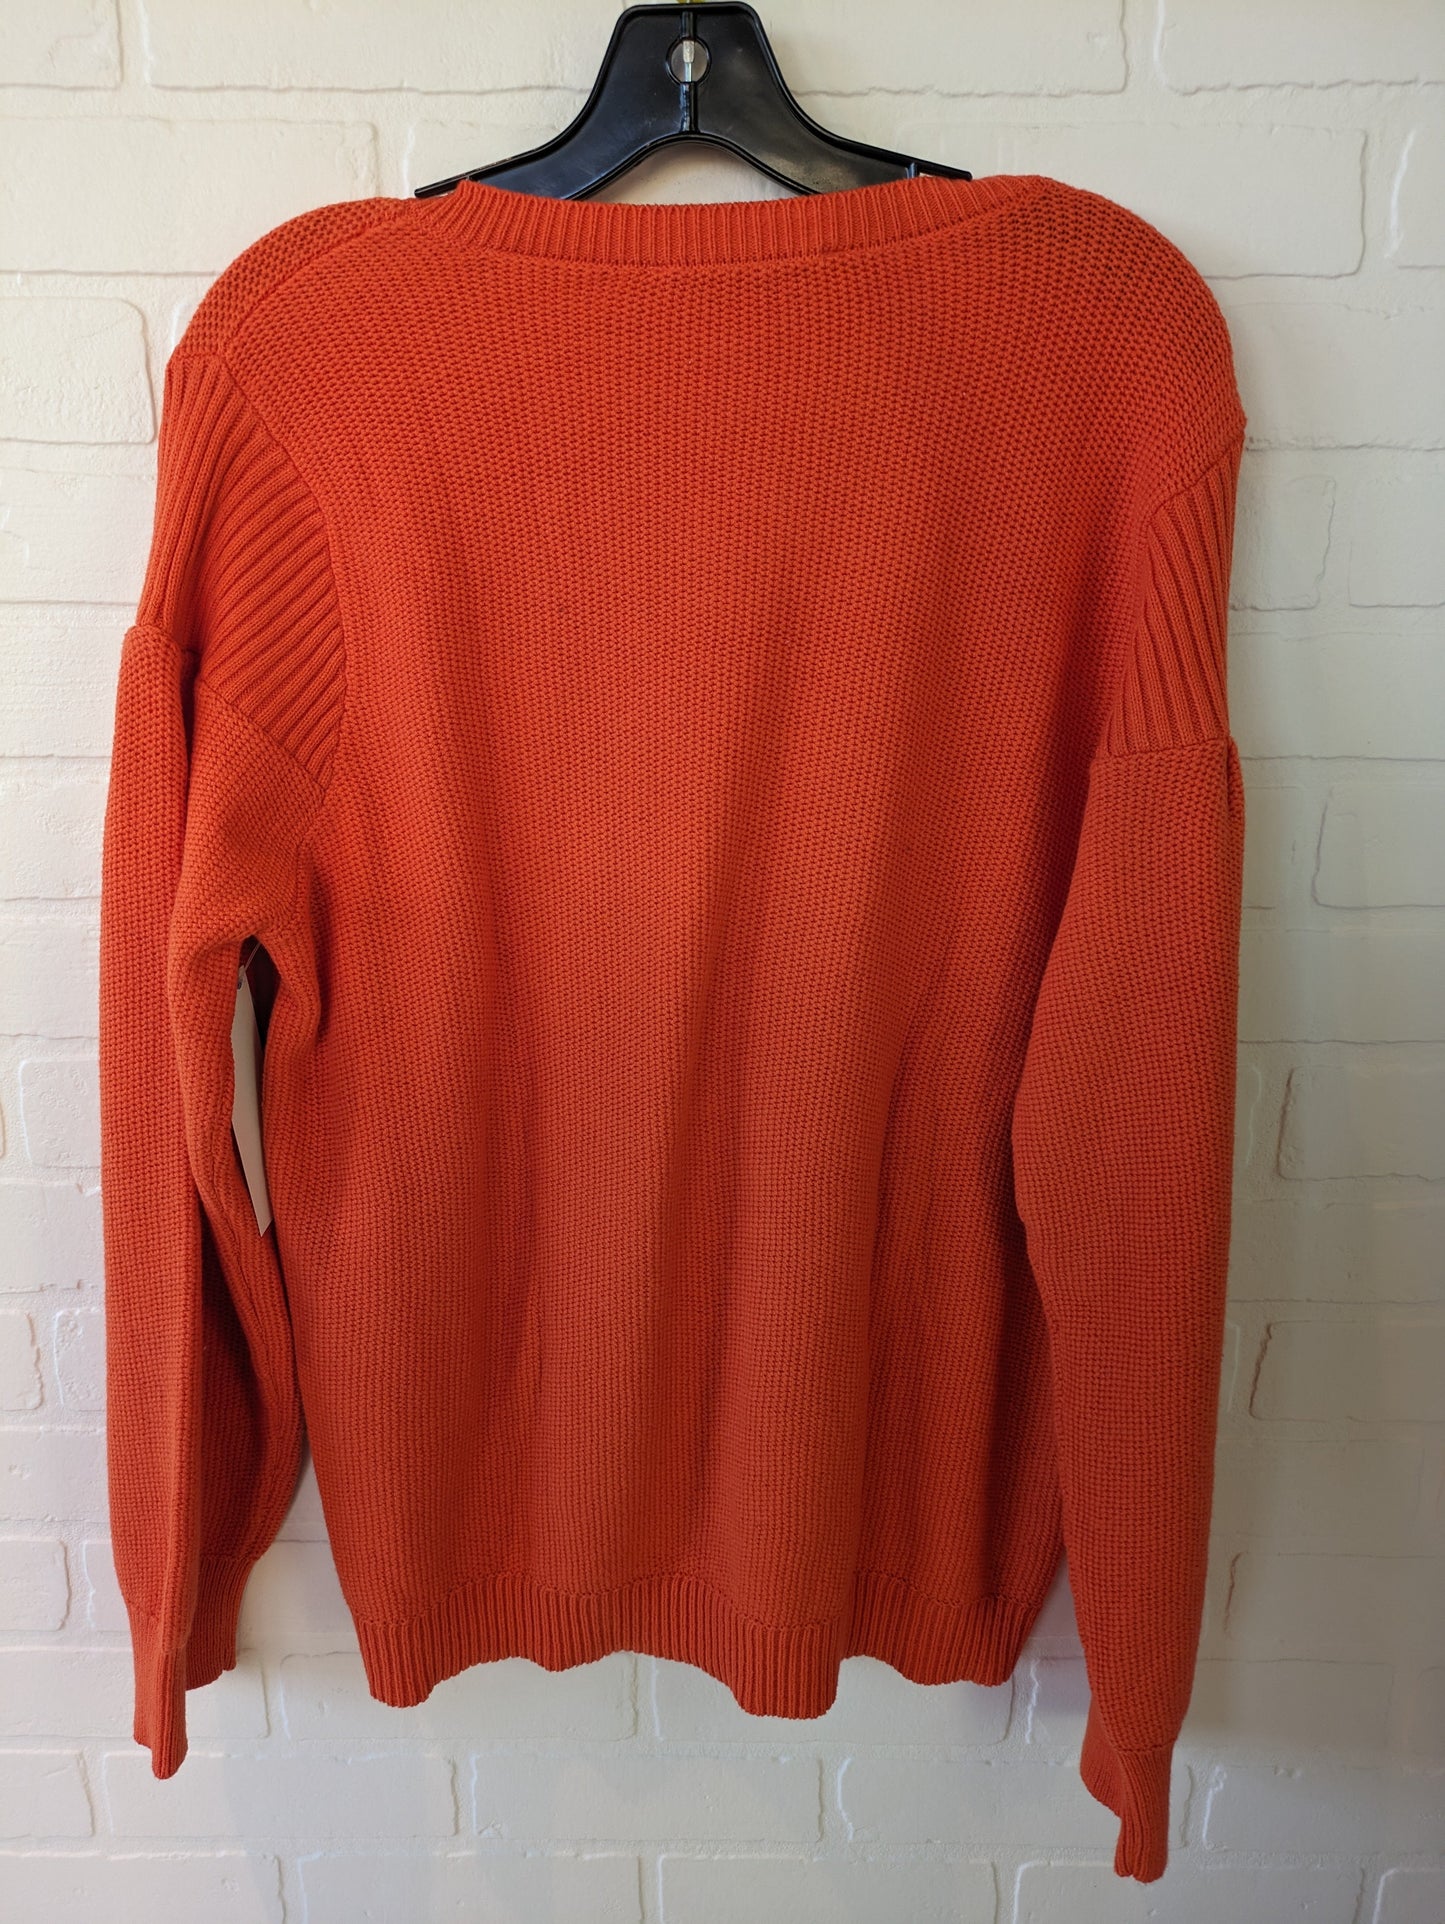 Sweater By Loft  Size: 1x